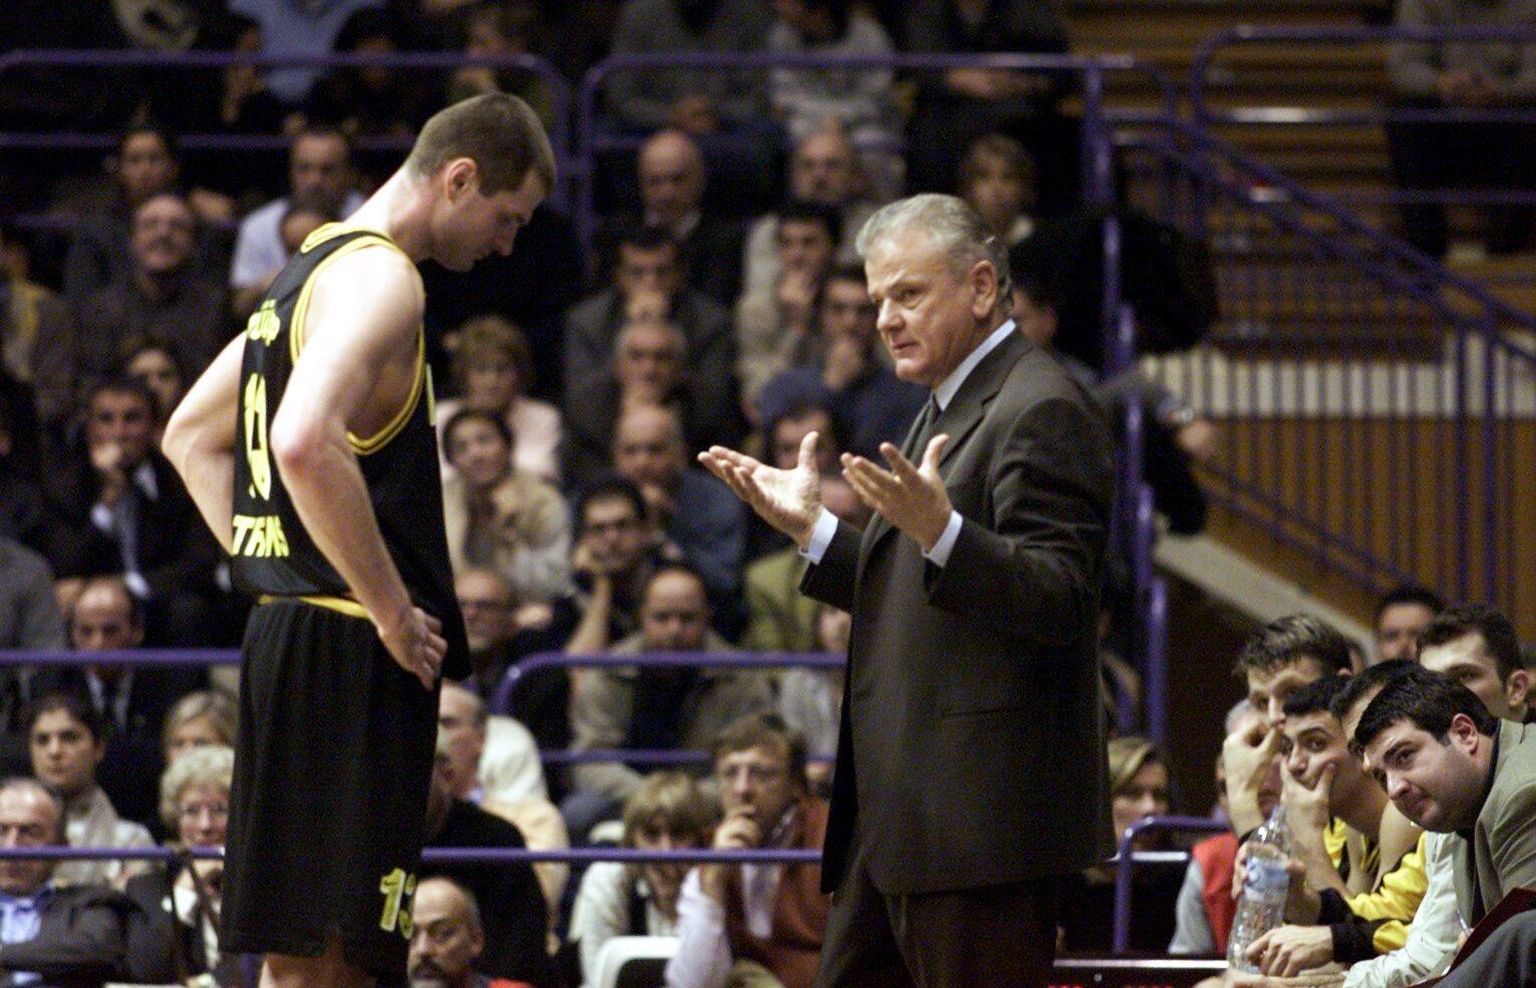 Fotomeenutus aastast 2000: Ateena AEK mängija Martin Müürsepp kuulab Dušan Ivkovići õpetussõnu.